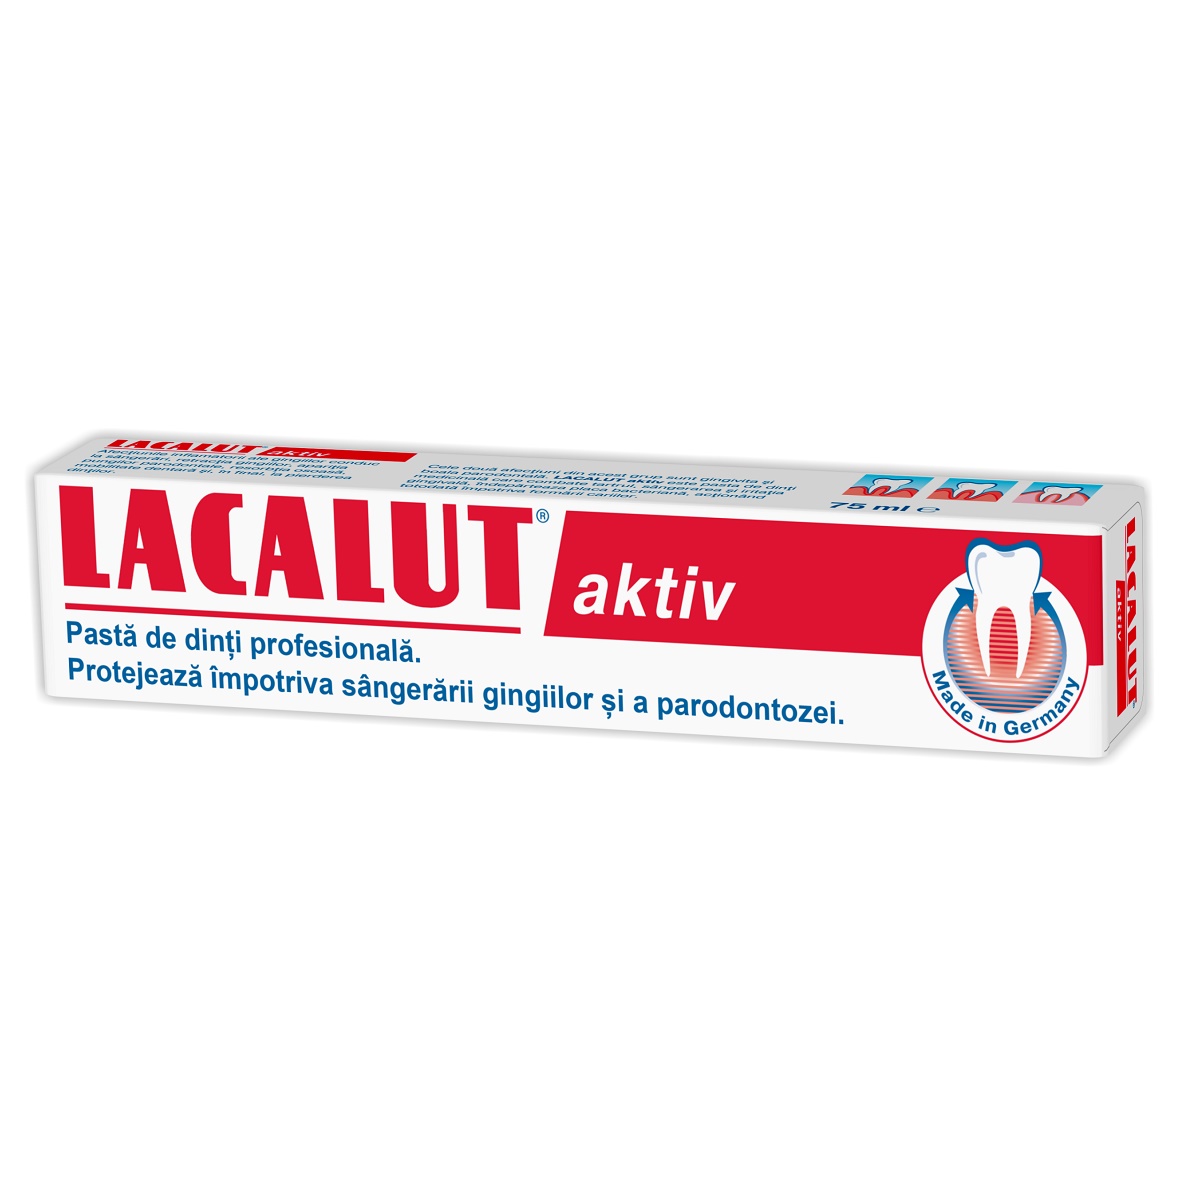 Pasta de dinti medicinala Aktiv, 75 ml, Lacalut